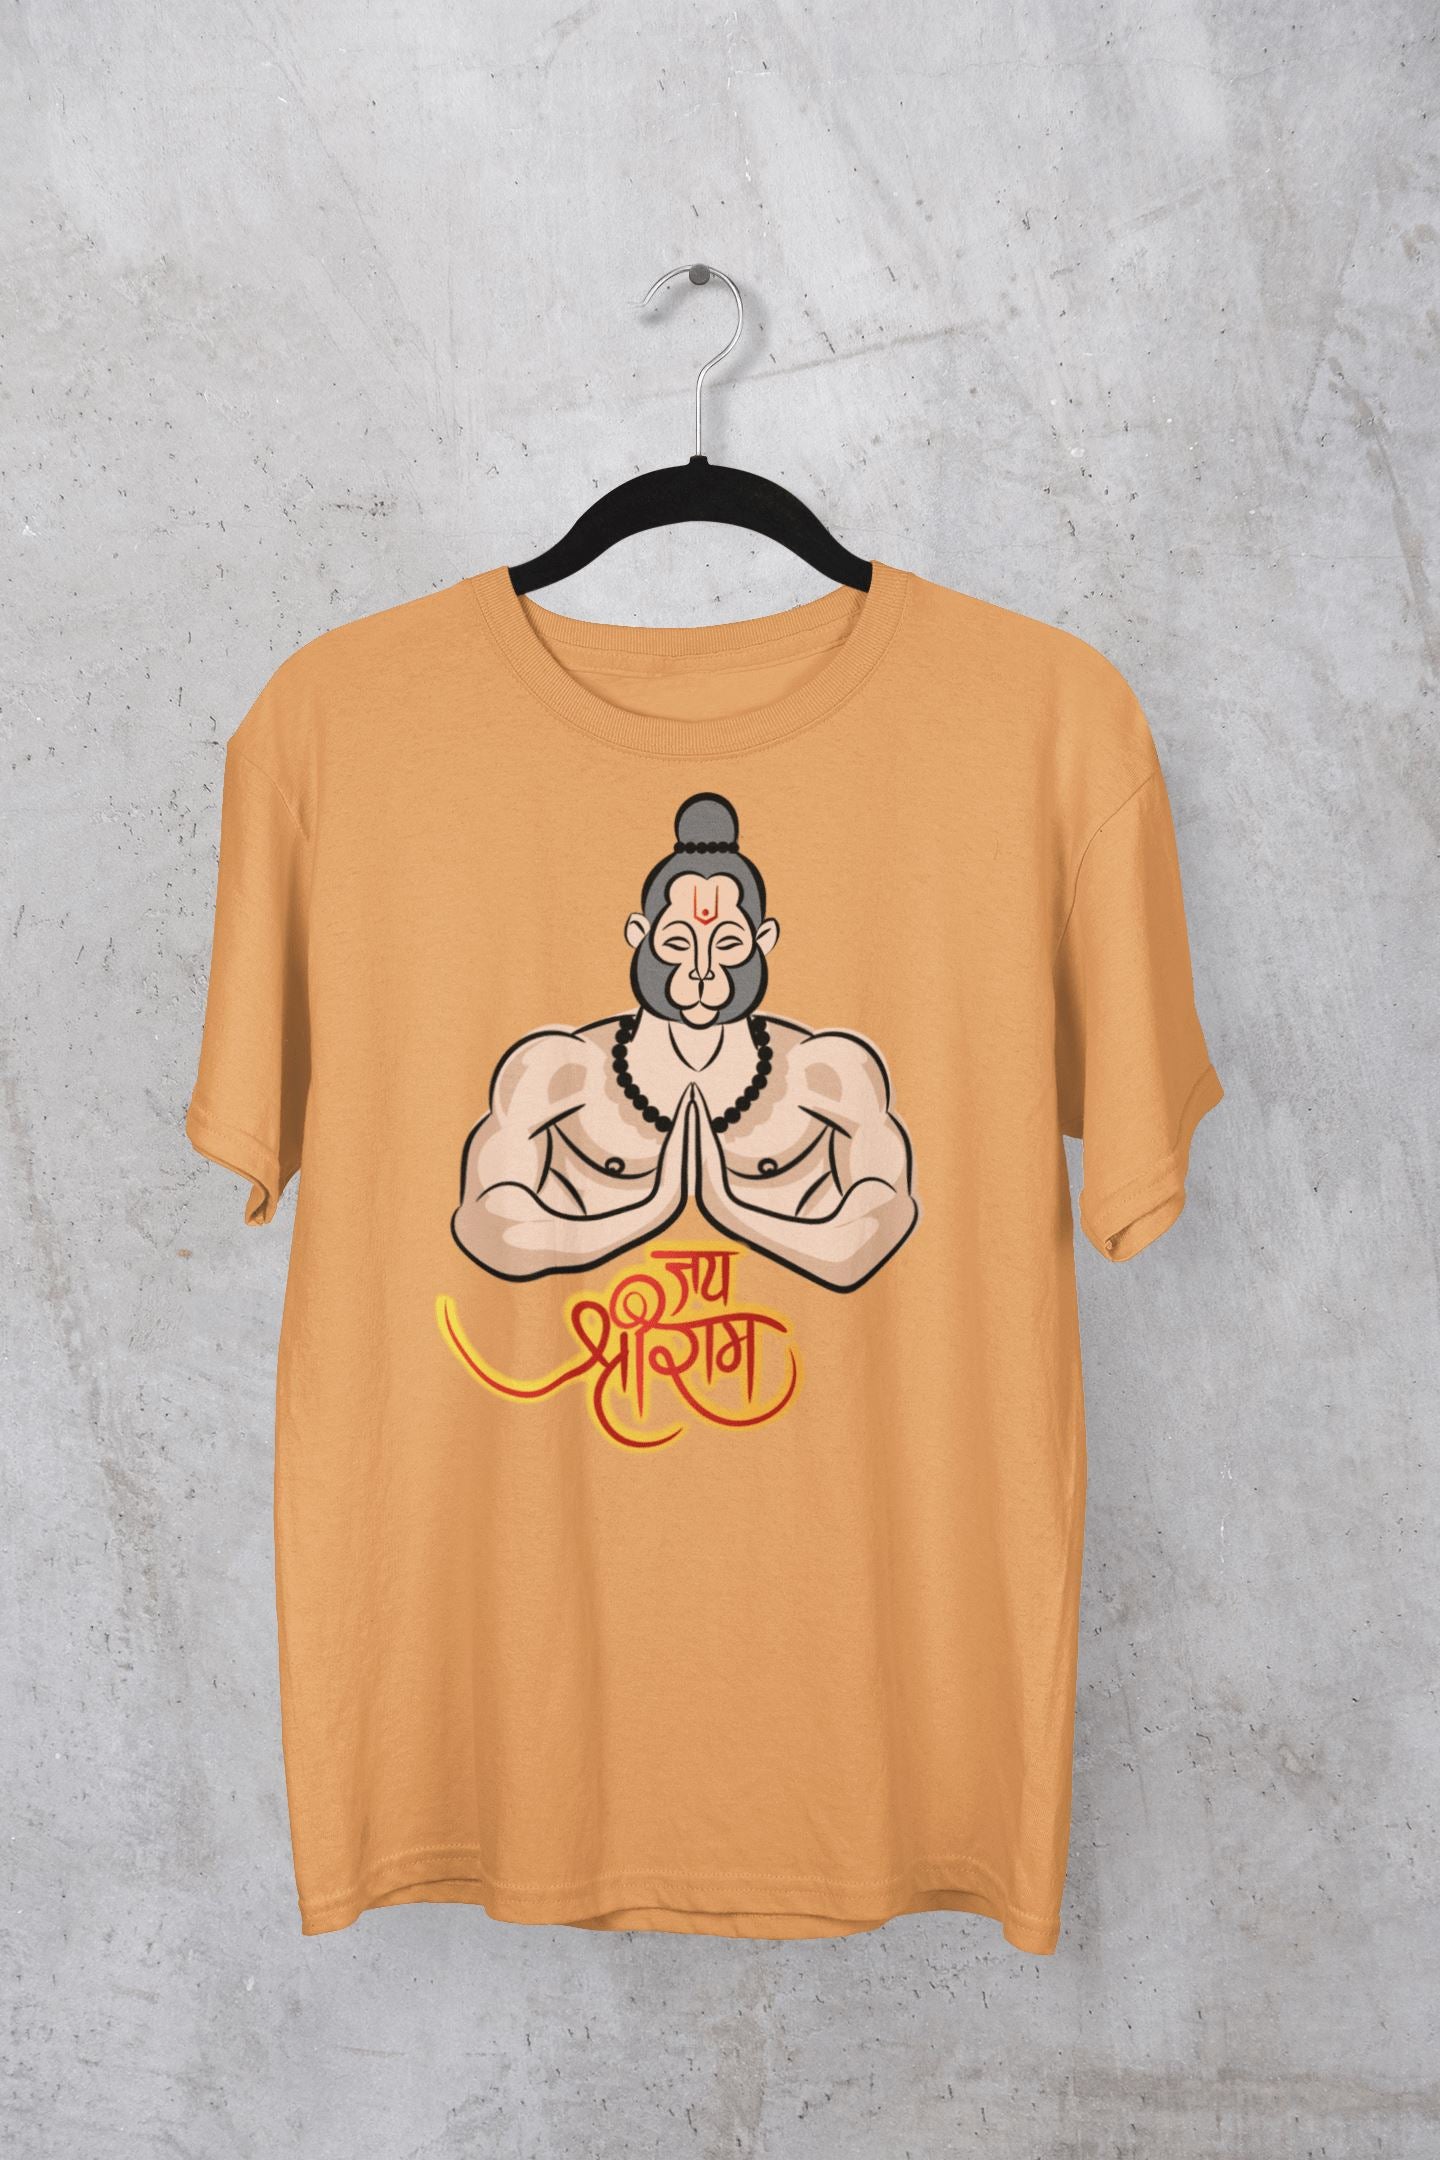 Jai Shri Ram Hanuman Ji Praying Special Multi Colour T Shirt for Men and Women - Catch My Drift India  clothing, god, hanuman, hanuman ji, hindu, india, made in india, ram, shirt, t shirt, ts